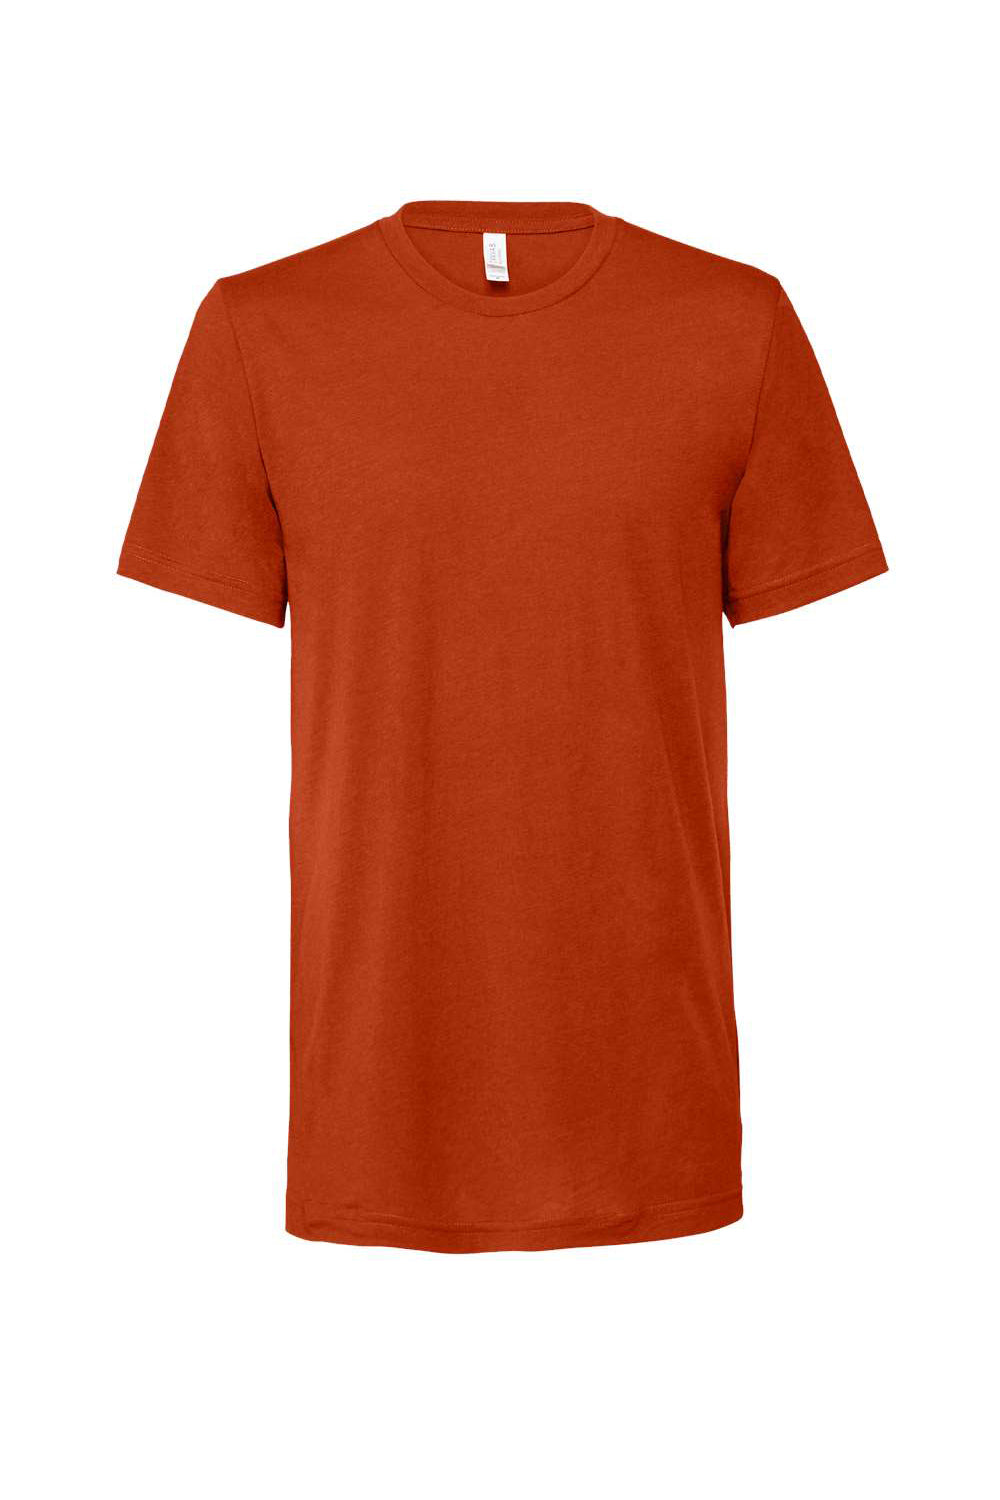 Bella + Canvas BC3413/3413C/3413 Mens Short Sleeve Crewneck T-Shirt Brick Red Flat Front